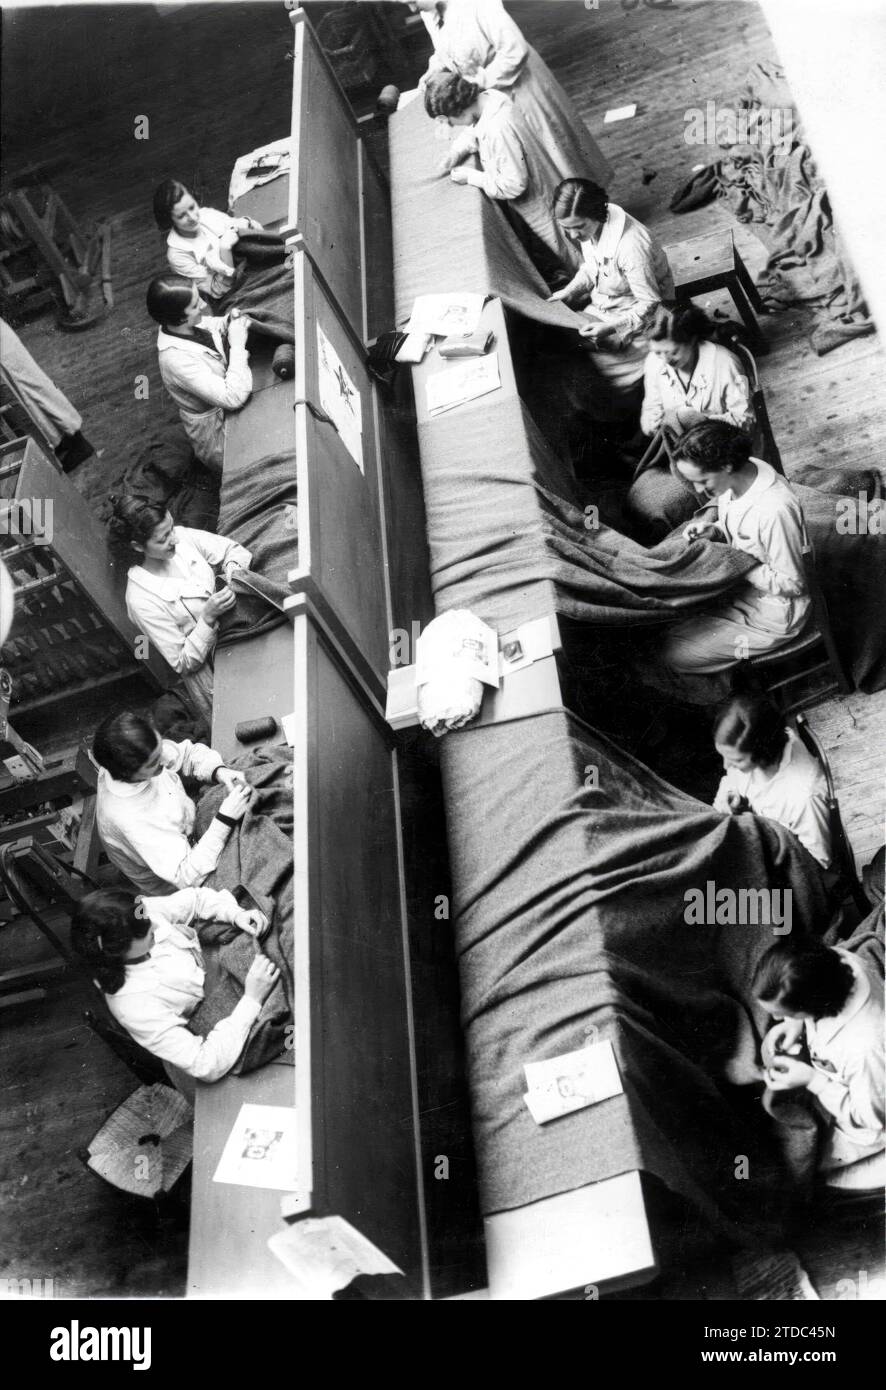 09/30/1936. Un aspect des ateliers de Madrid de l'arrière, où ses ouvriers étaient entièrement dédiés à la confection de vêtements pour les miliciens. Crédit : Album / Archivo ABC / Martín Santos Yubero Banque D'Images